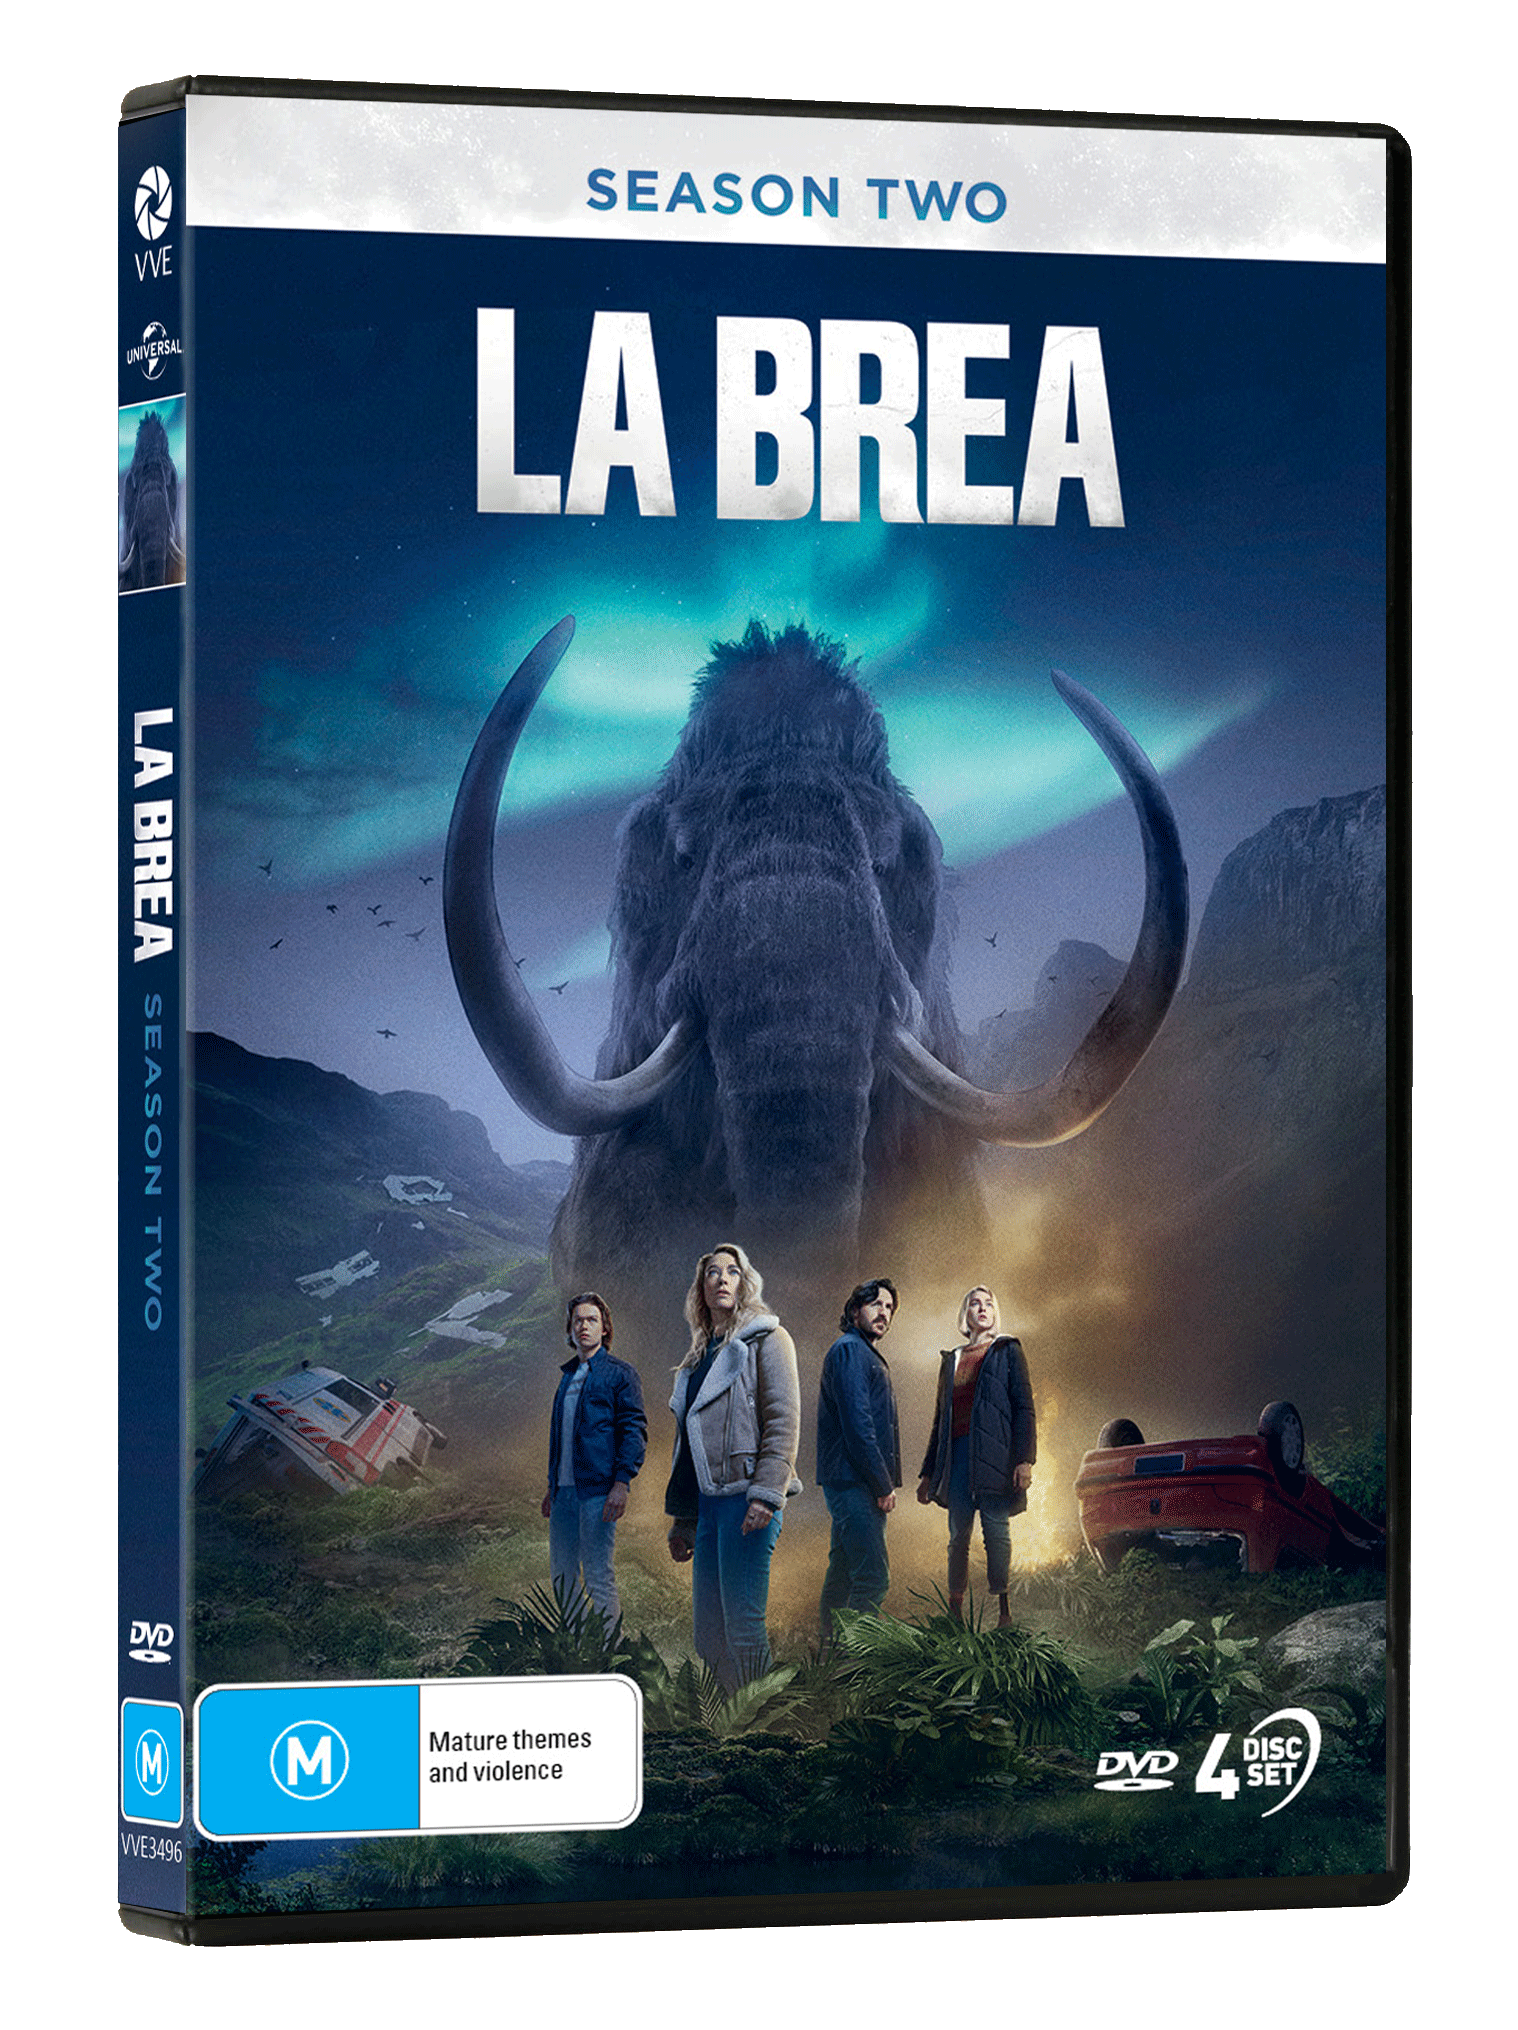 La Brea Season Two Via Vision Entertainment